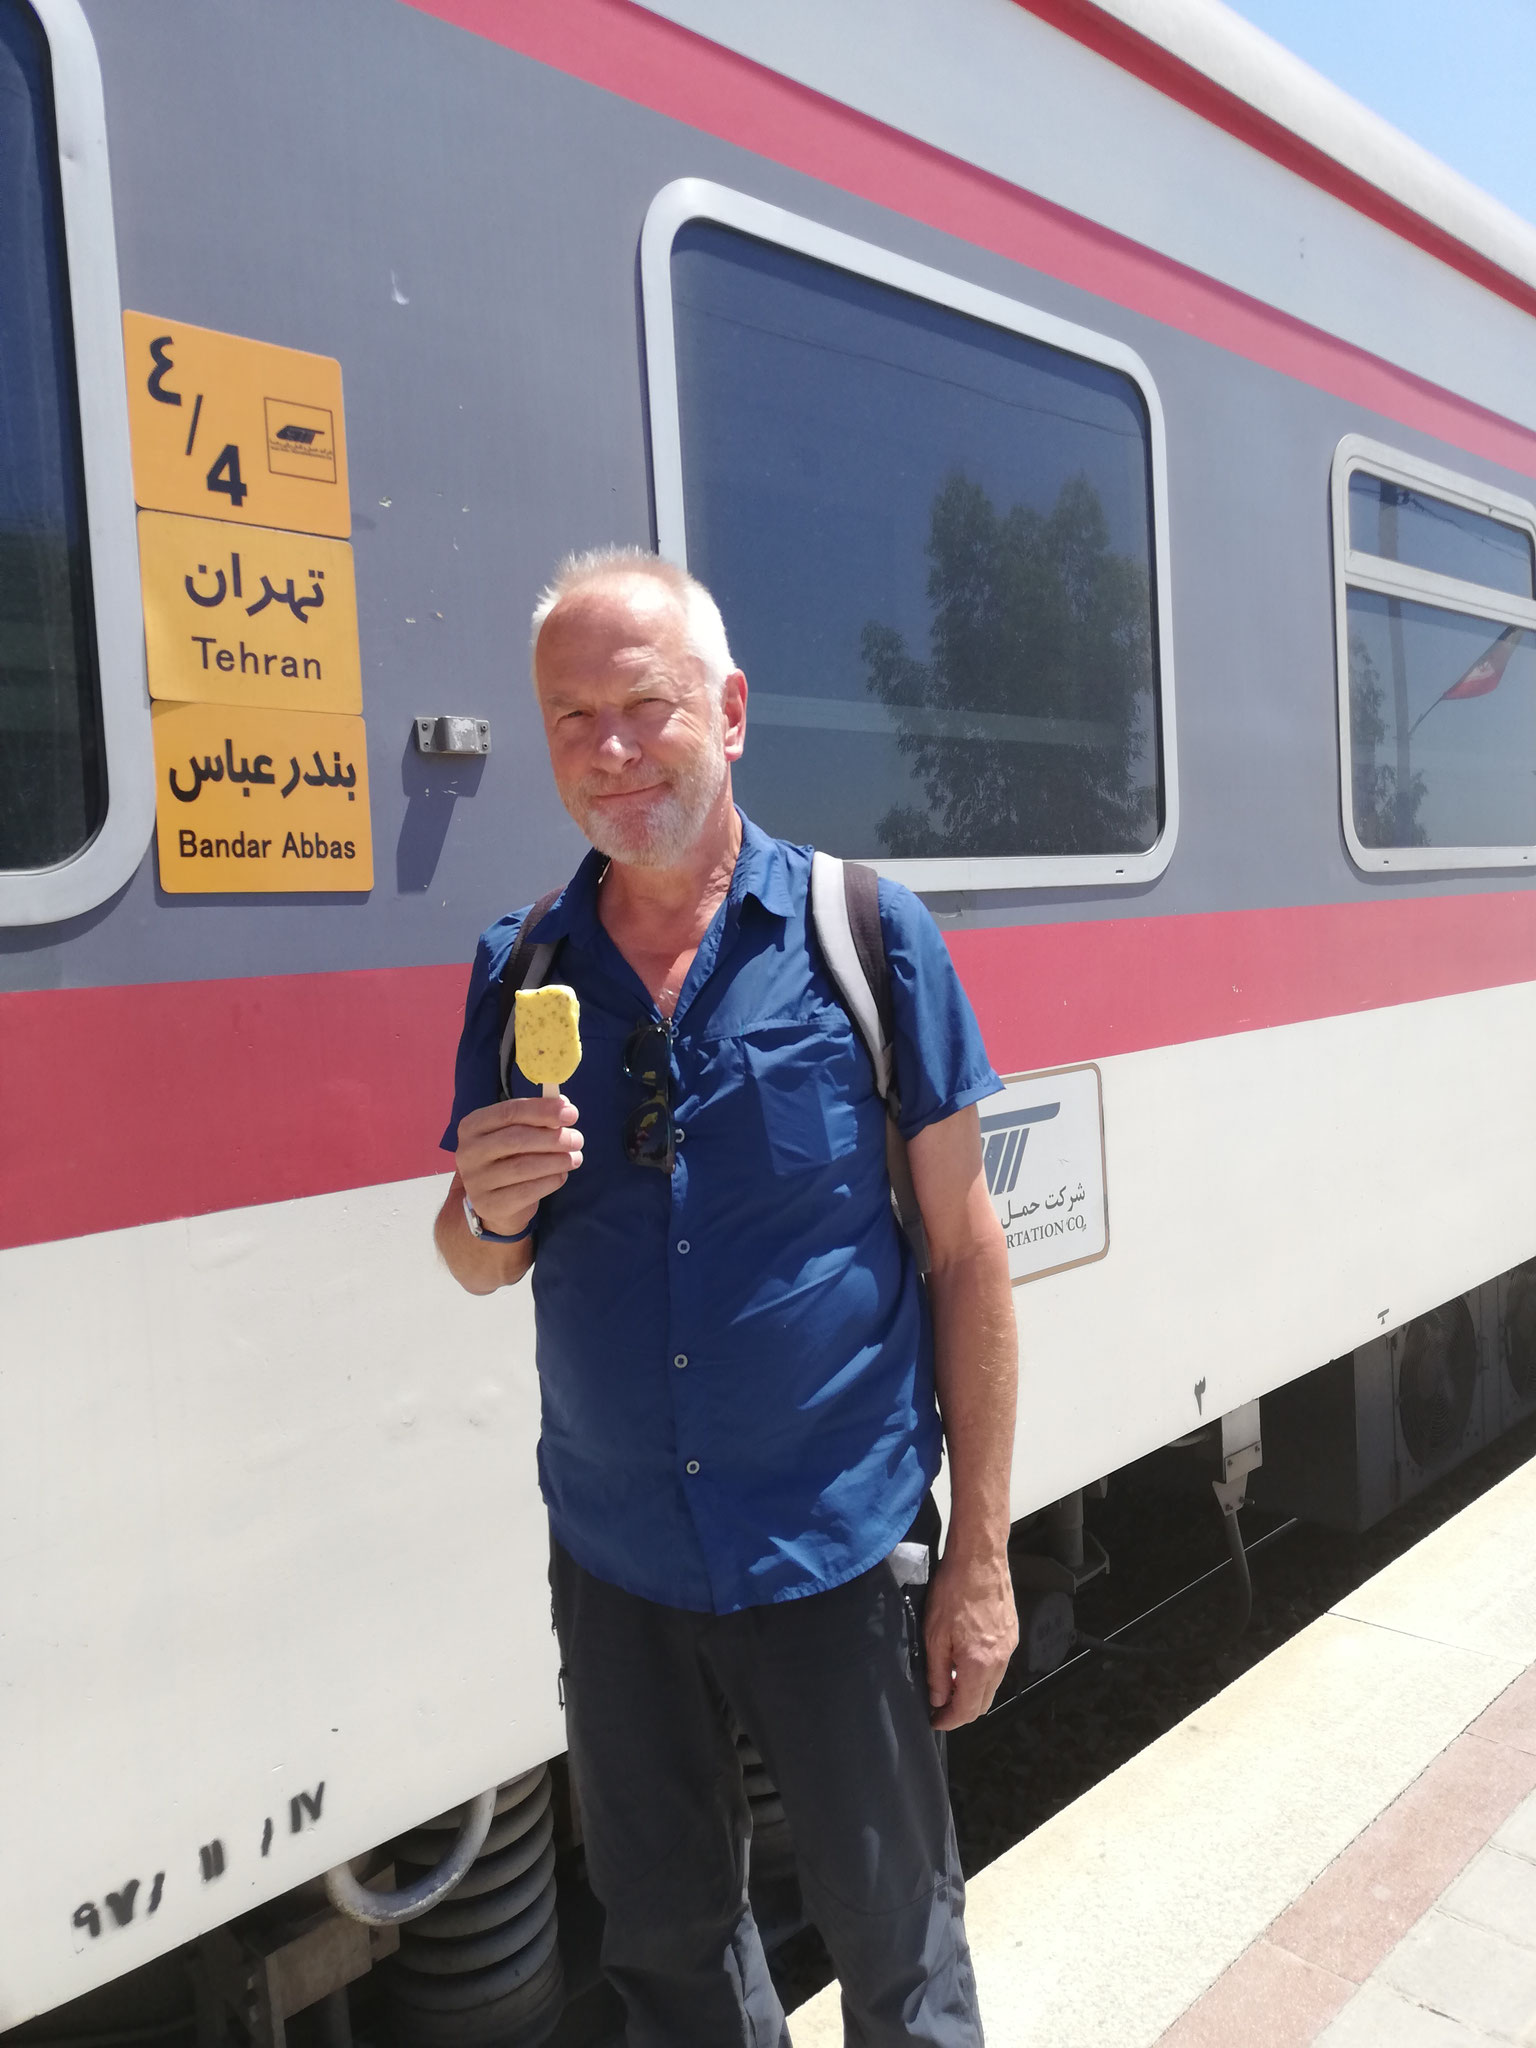 Willi comiendo un helado de azafrán aprovechando una parada larga del tren